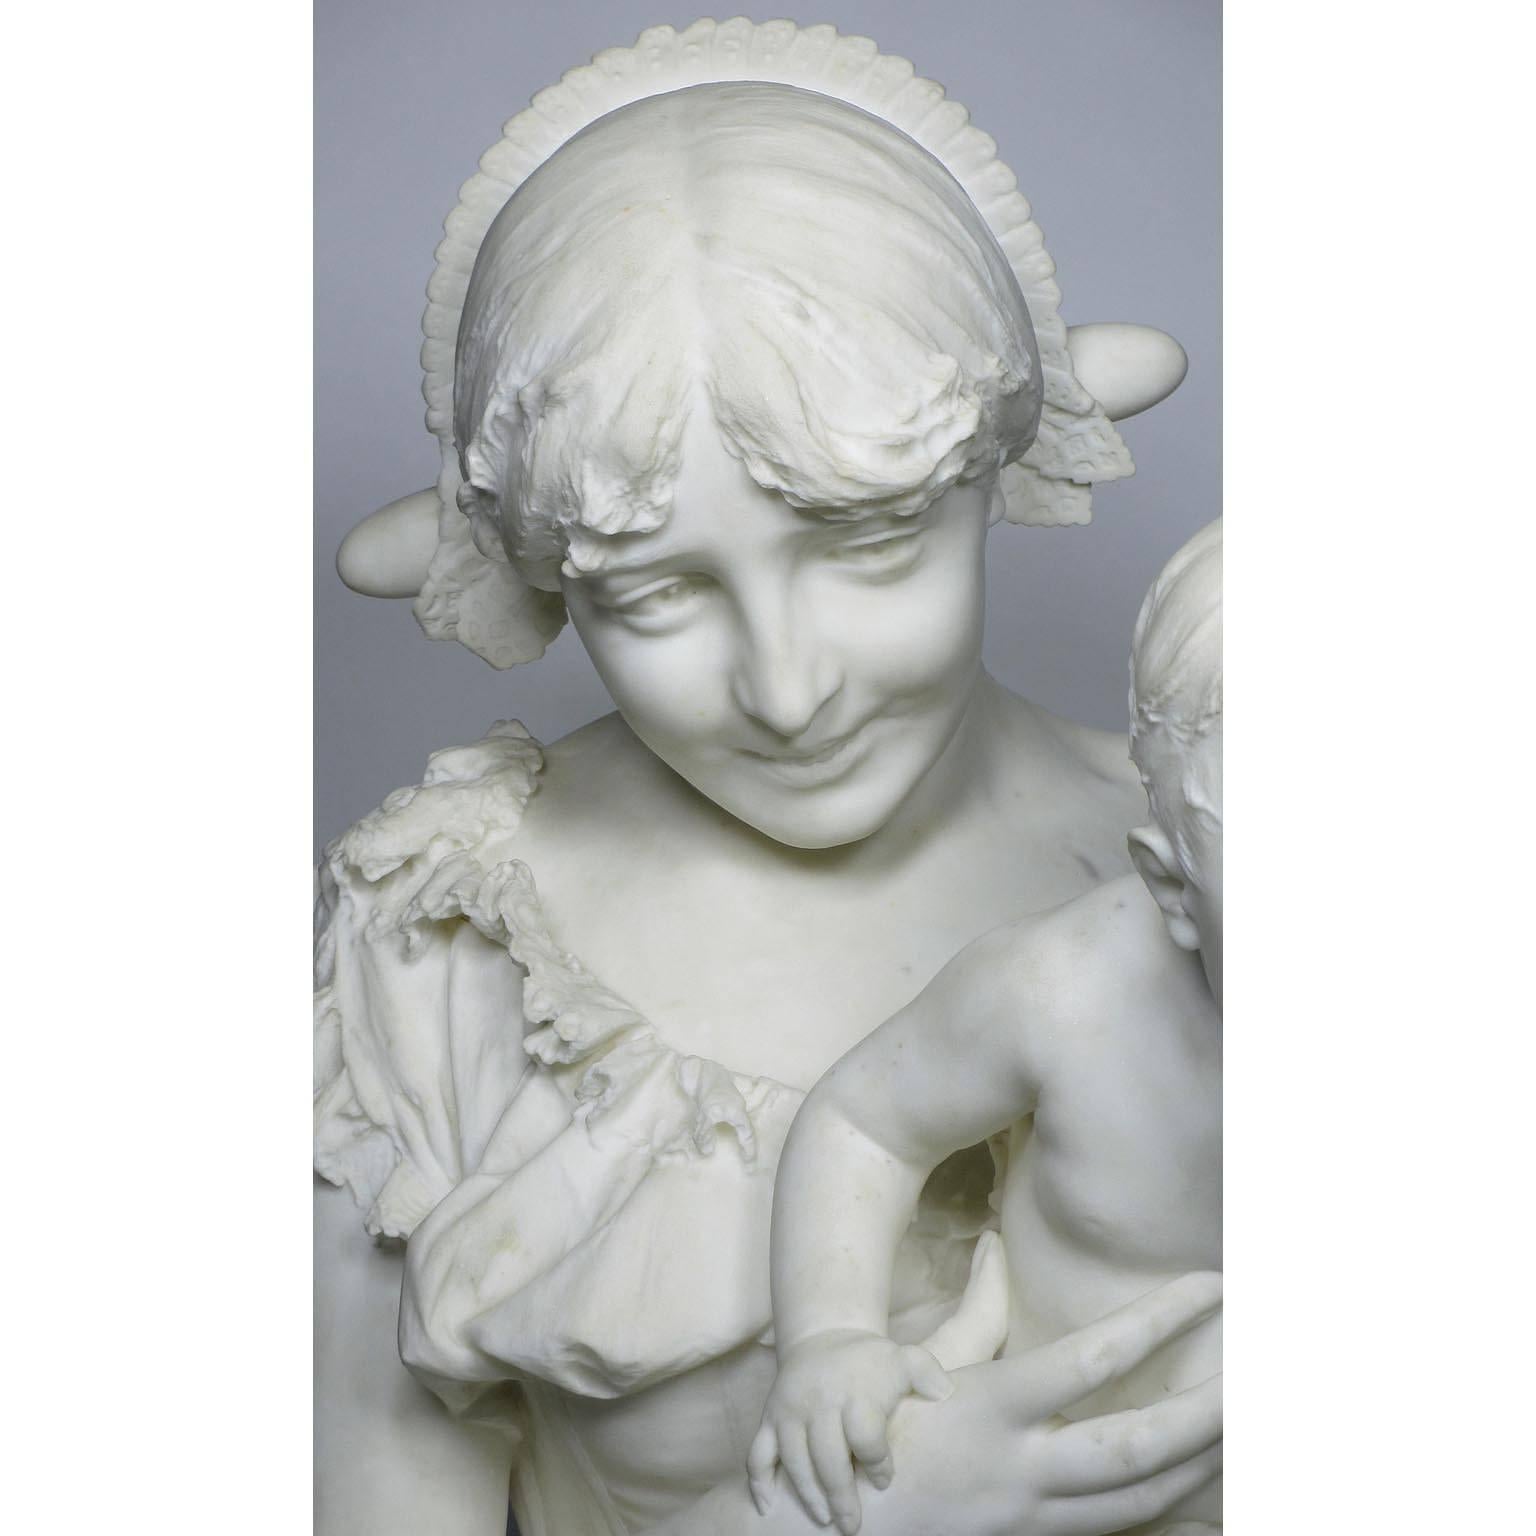 Très belle et charmante sculpture italienne en marbre de Carrare du XIXe siècle, grandeur nature, représentant une jeune mère joyeuse tenant son jeune enfant dans les bras, par le professeur Alfonso Mazzucchelli. Signé : A. Mazzucchelli, Milano,